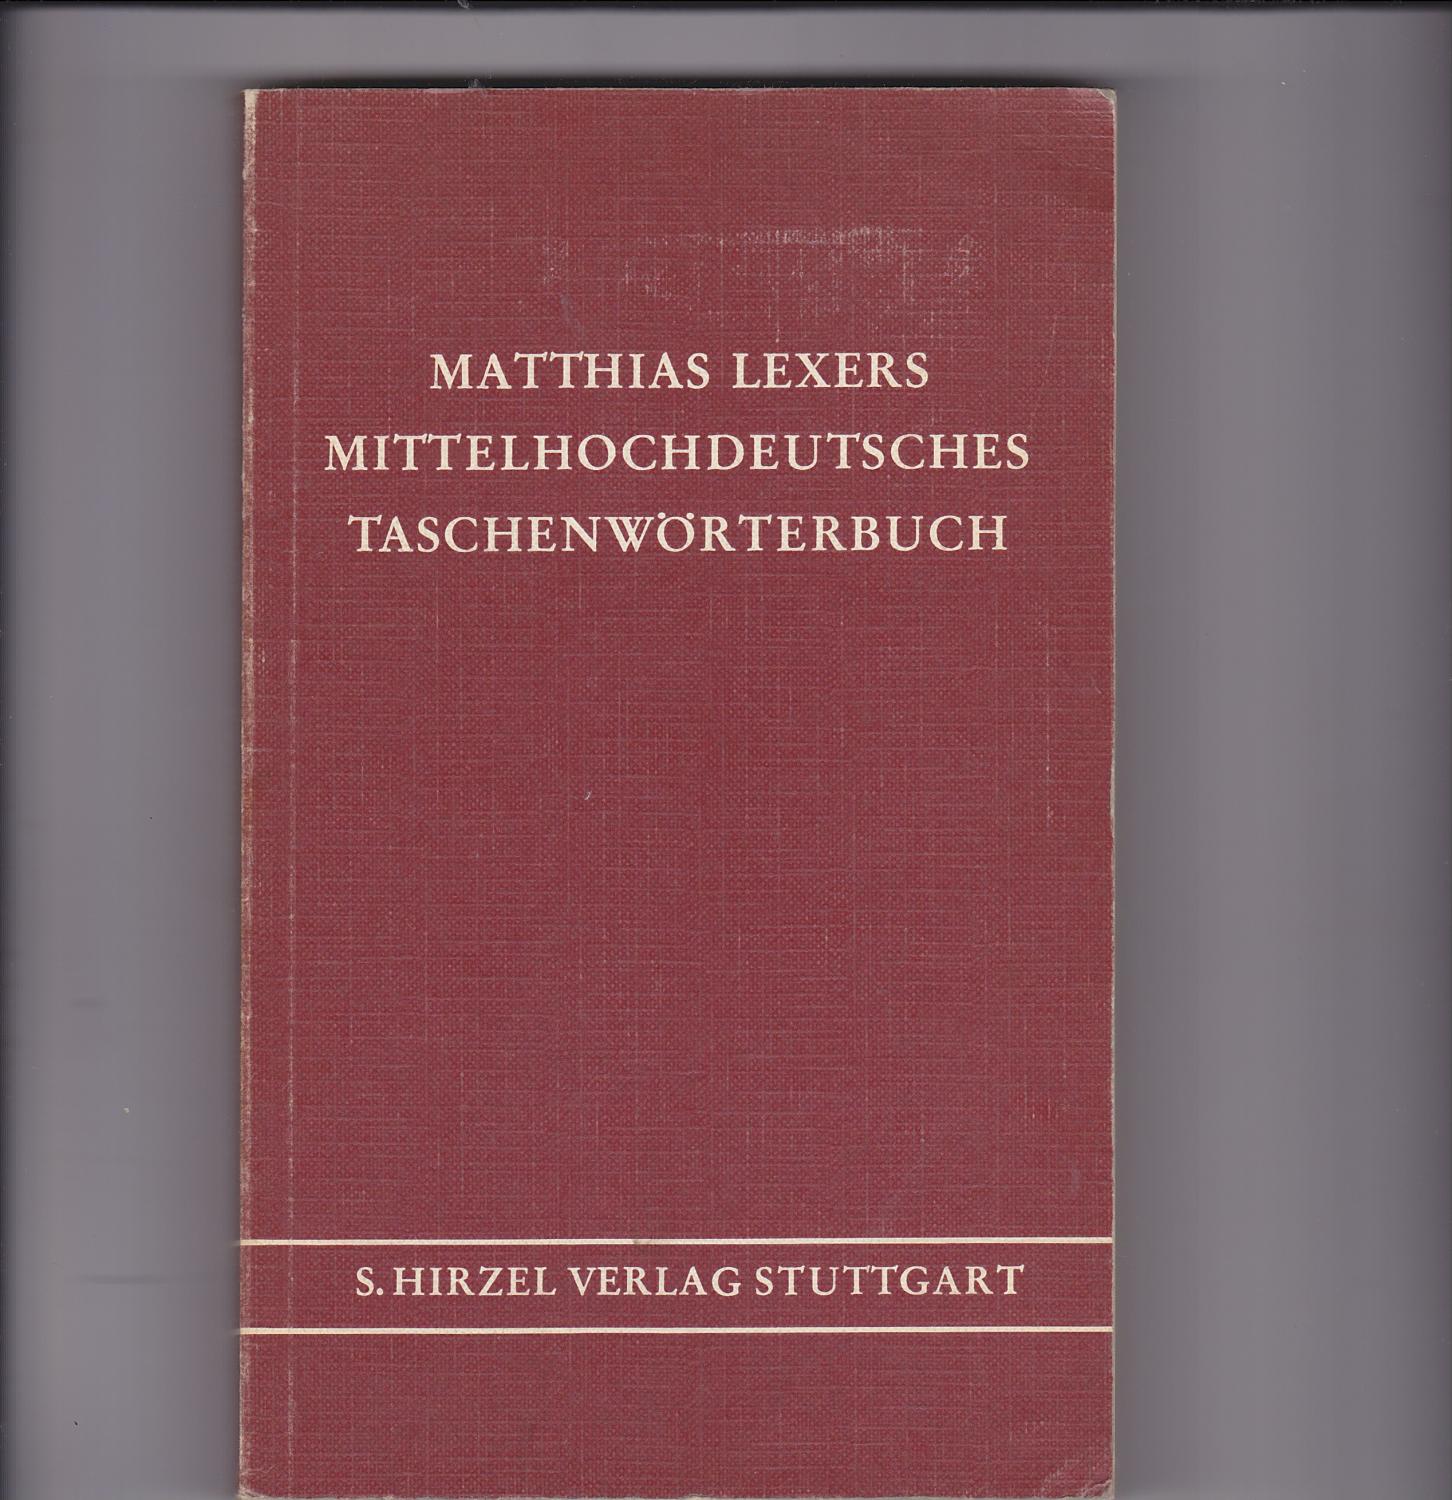 Matthias Lexers Mittelhochdeutsches Taschenwörterbuch